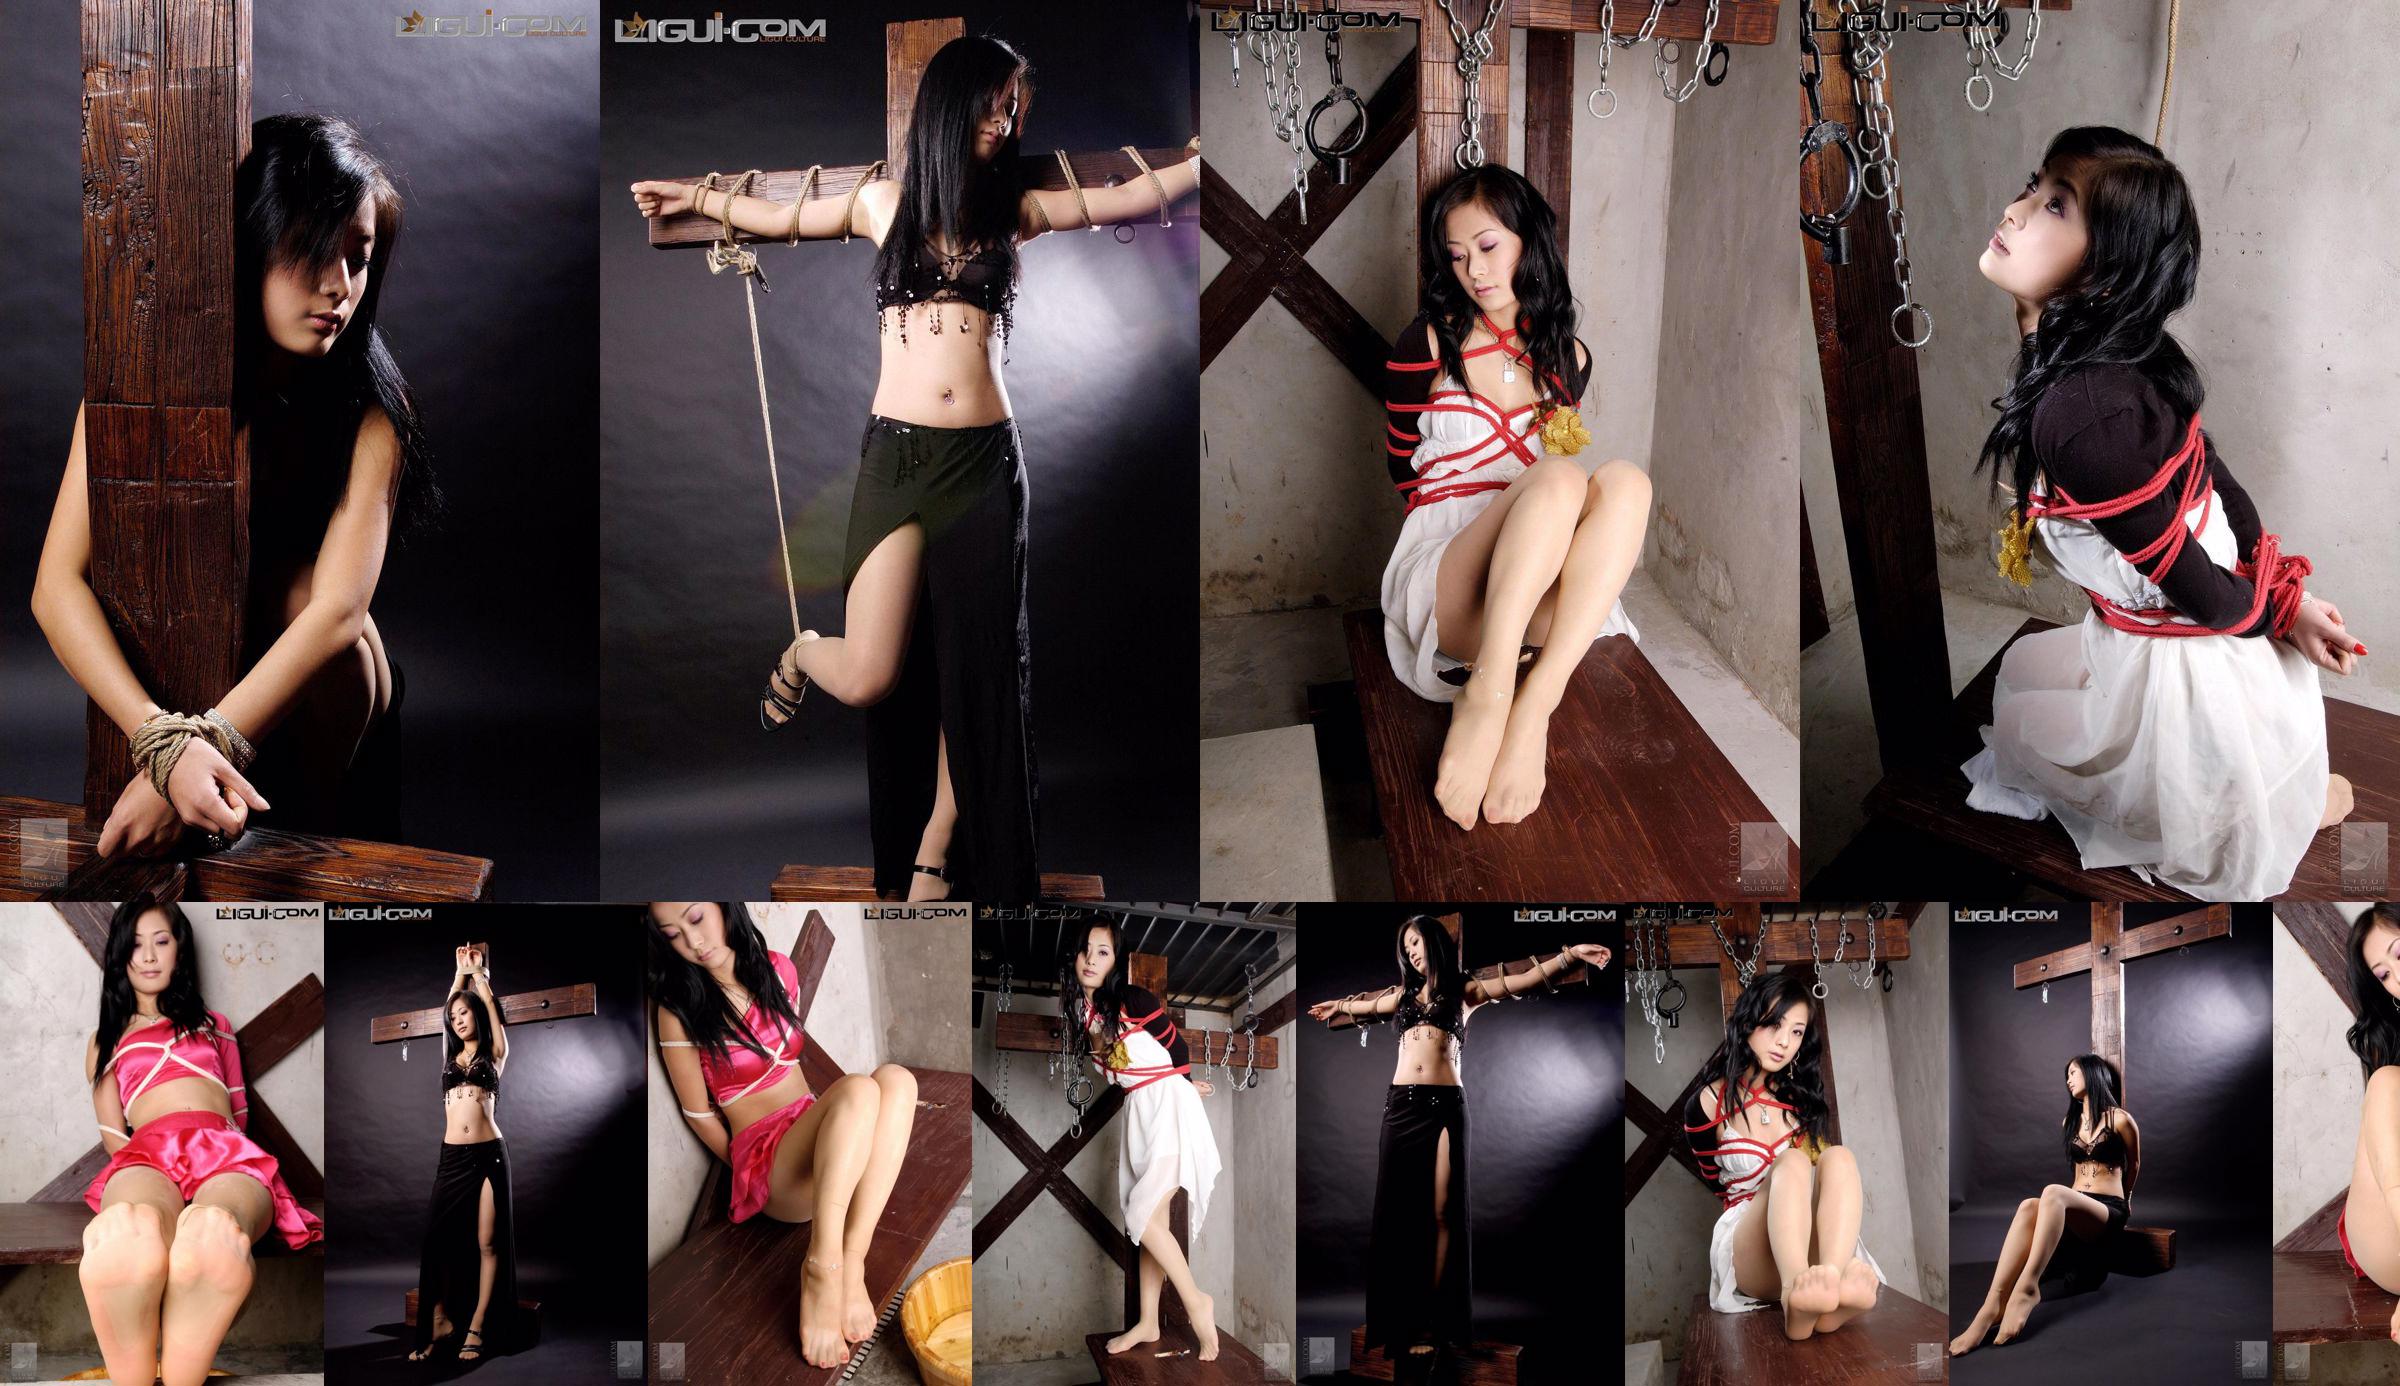 [Yuzumi Mitsuka LiGui] Zdjęcie modelki Saya „Związana czerwoną sznurem” Piękne nogi i nefrytowe stopy Zdjęcie No.403a5b Strona 3